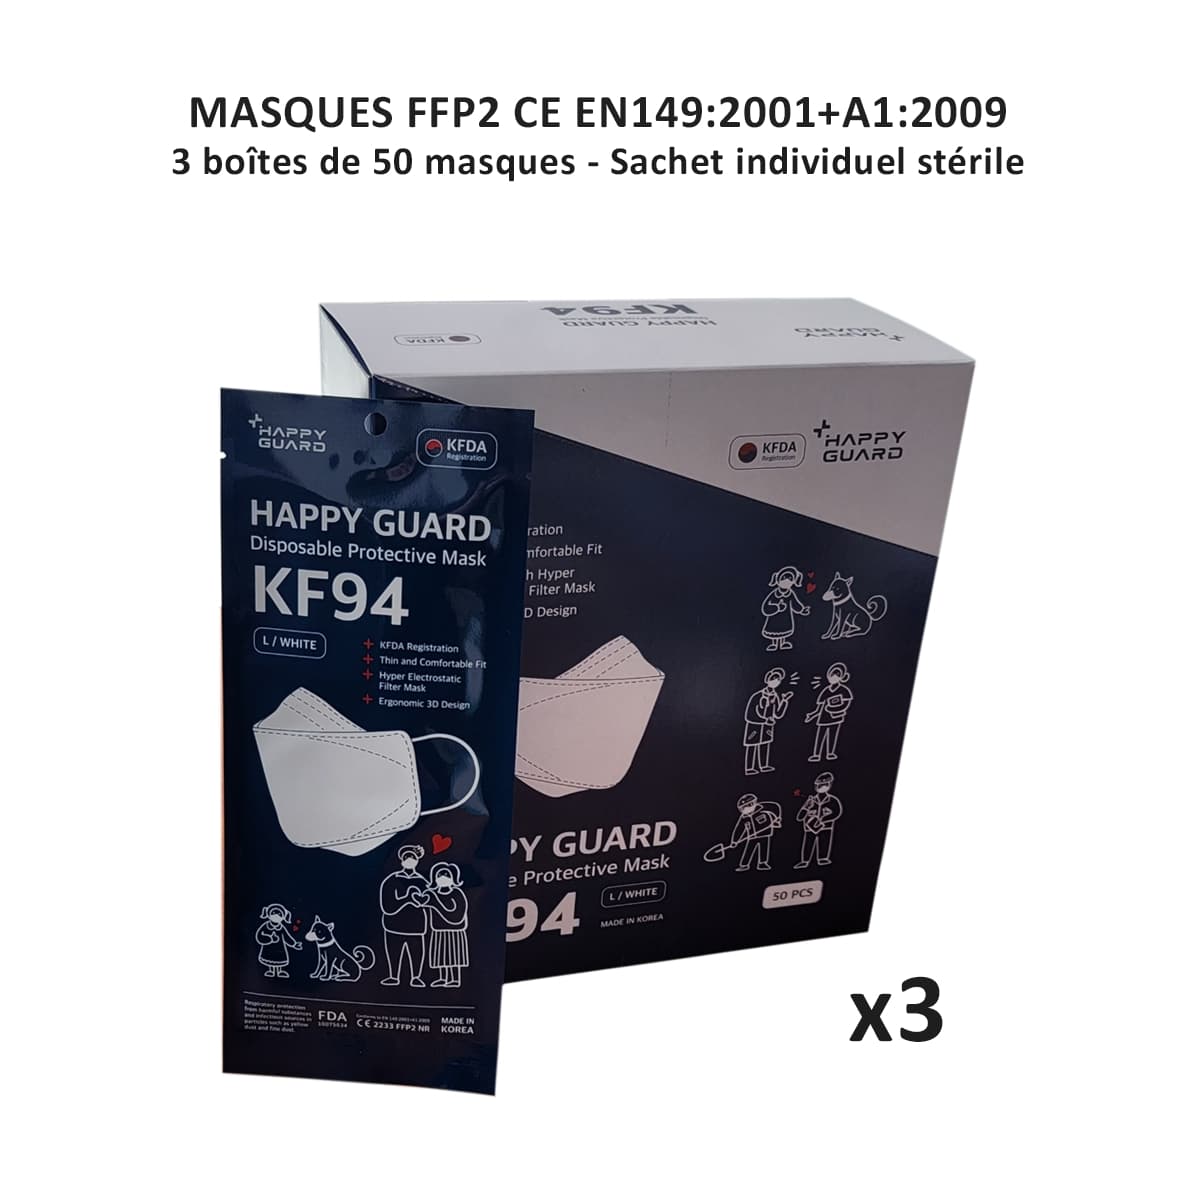 150 Masques FFP2 CE - norme EN149:2001+A1:2009 - 3 Boîtes de 50 - sachet individuel stérile - Happy Guard 